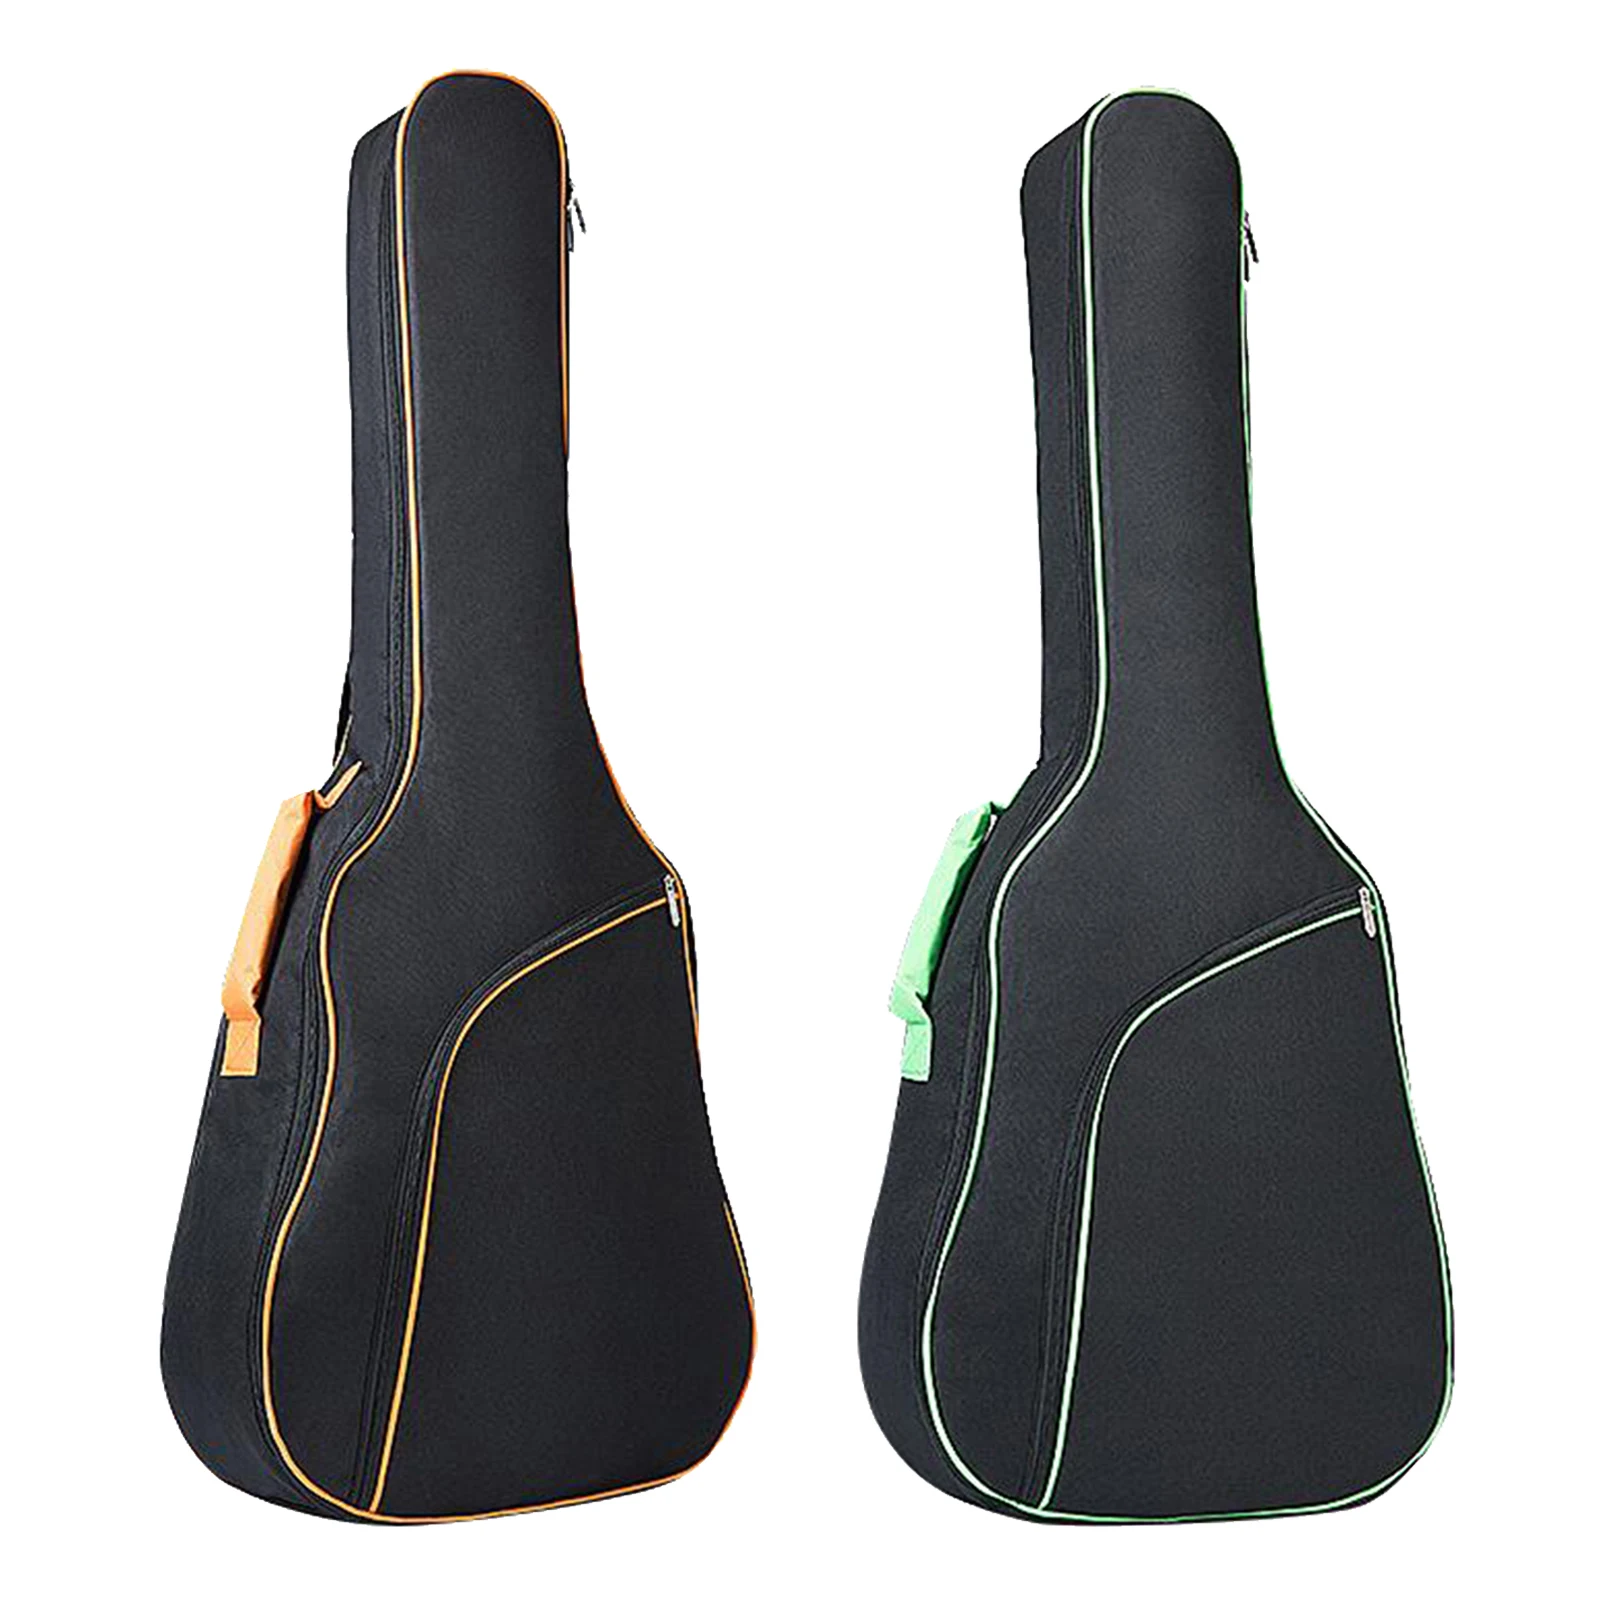 

41 дюйм 600D ткань Оксфорд Акустическая гитара Gig сумка с 10 мм подкладкой и двойным регулируемым плечевым ремнем